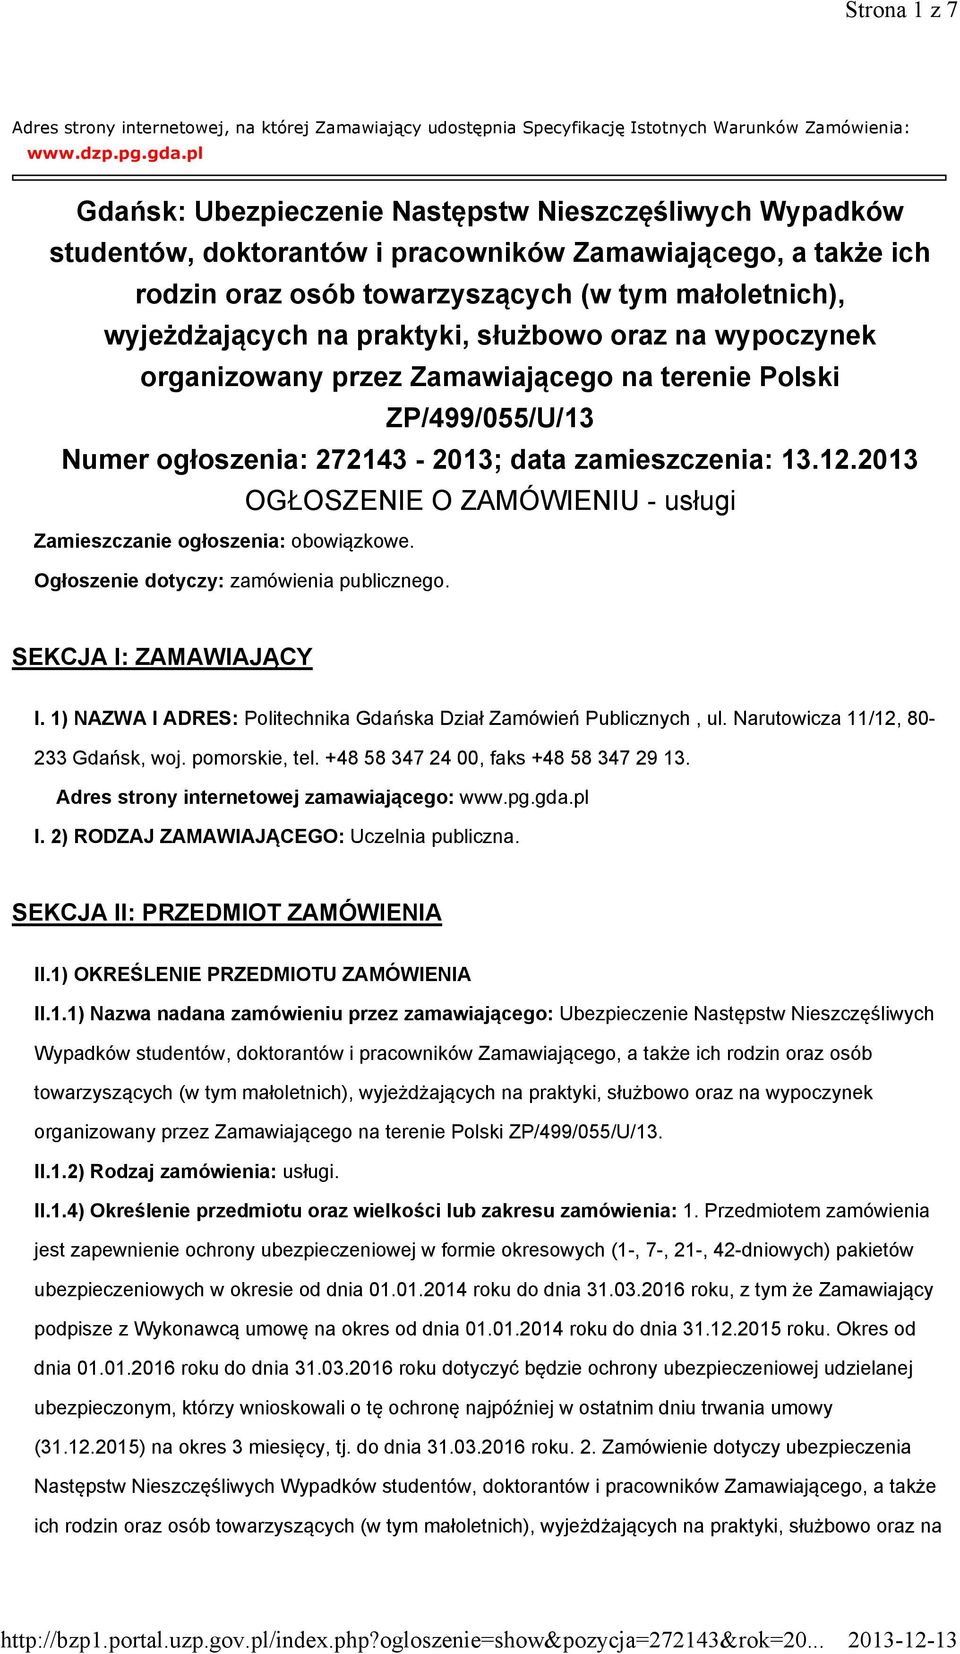 praktyki, służbowo oraz na wypoczynek organizowany przez Zamawiającego na terenie Polski ZP/499/055/U/13 Numer ogłoszenia: 272143-2013; data zamieszczenia: 13.12.